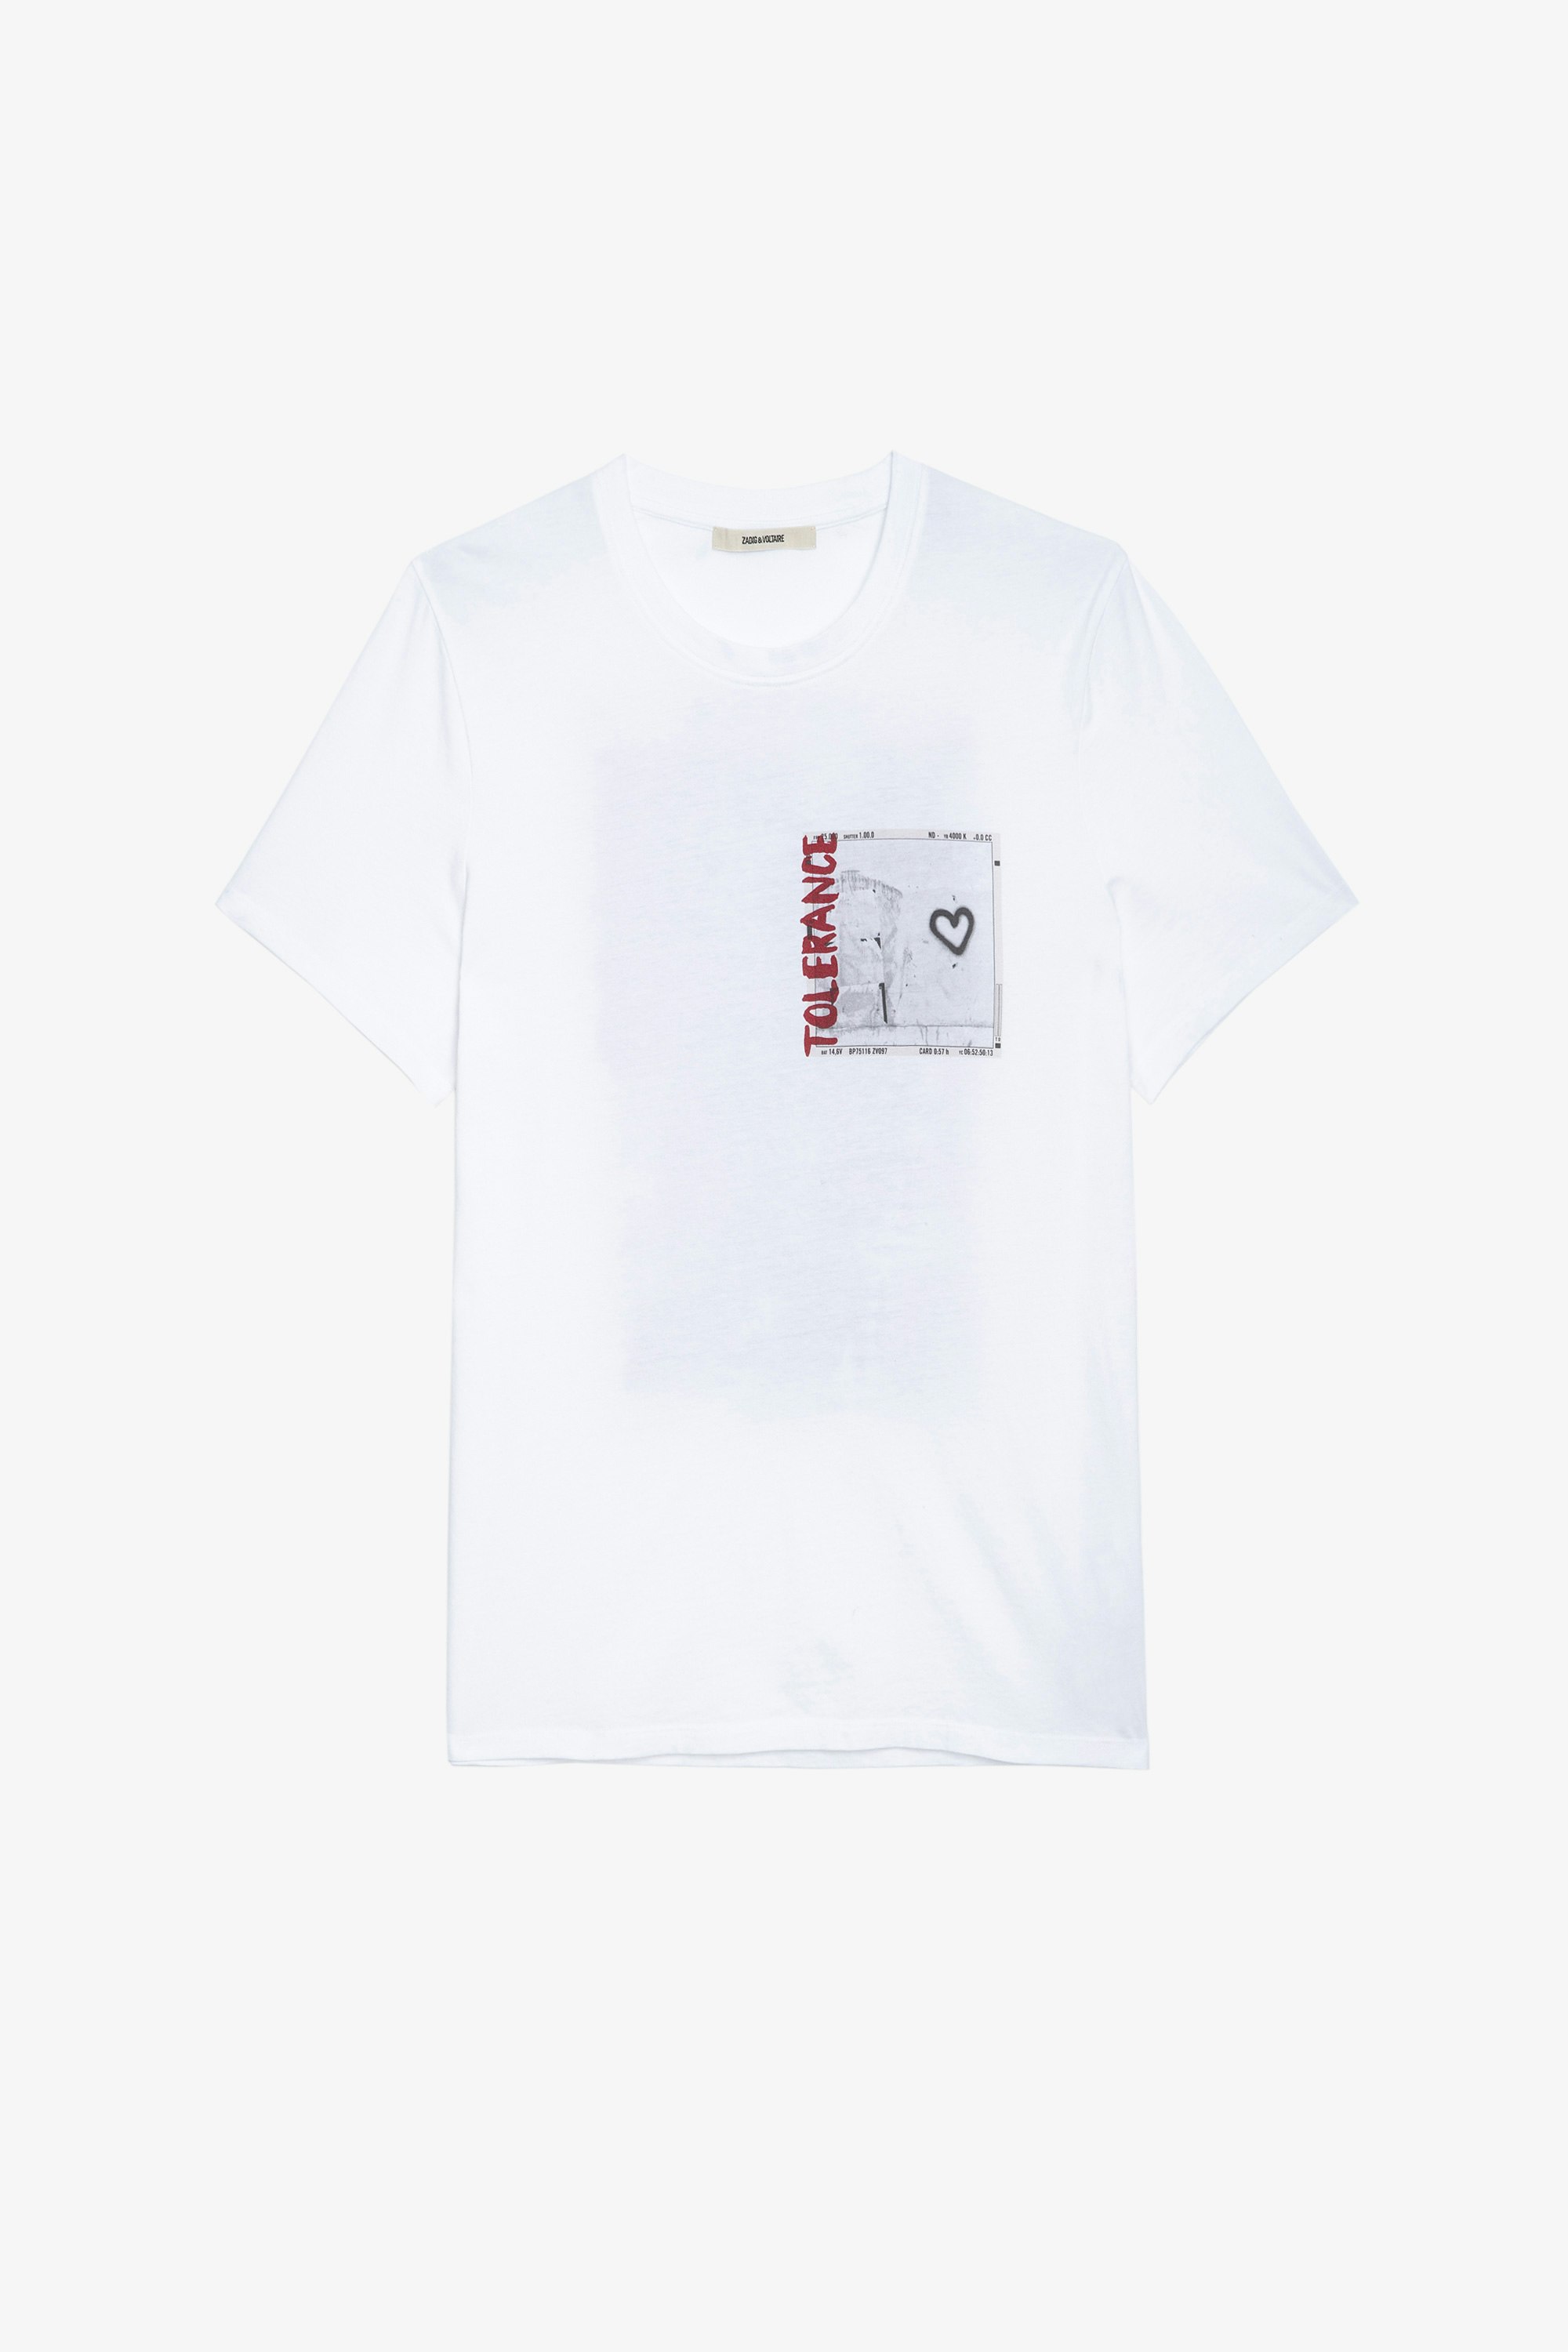 Camiseta Ted Photoprint Camiseta blanca de algodón con impresión fotográfica para hombre